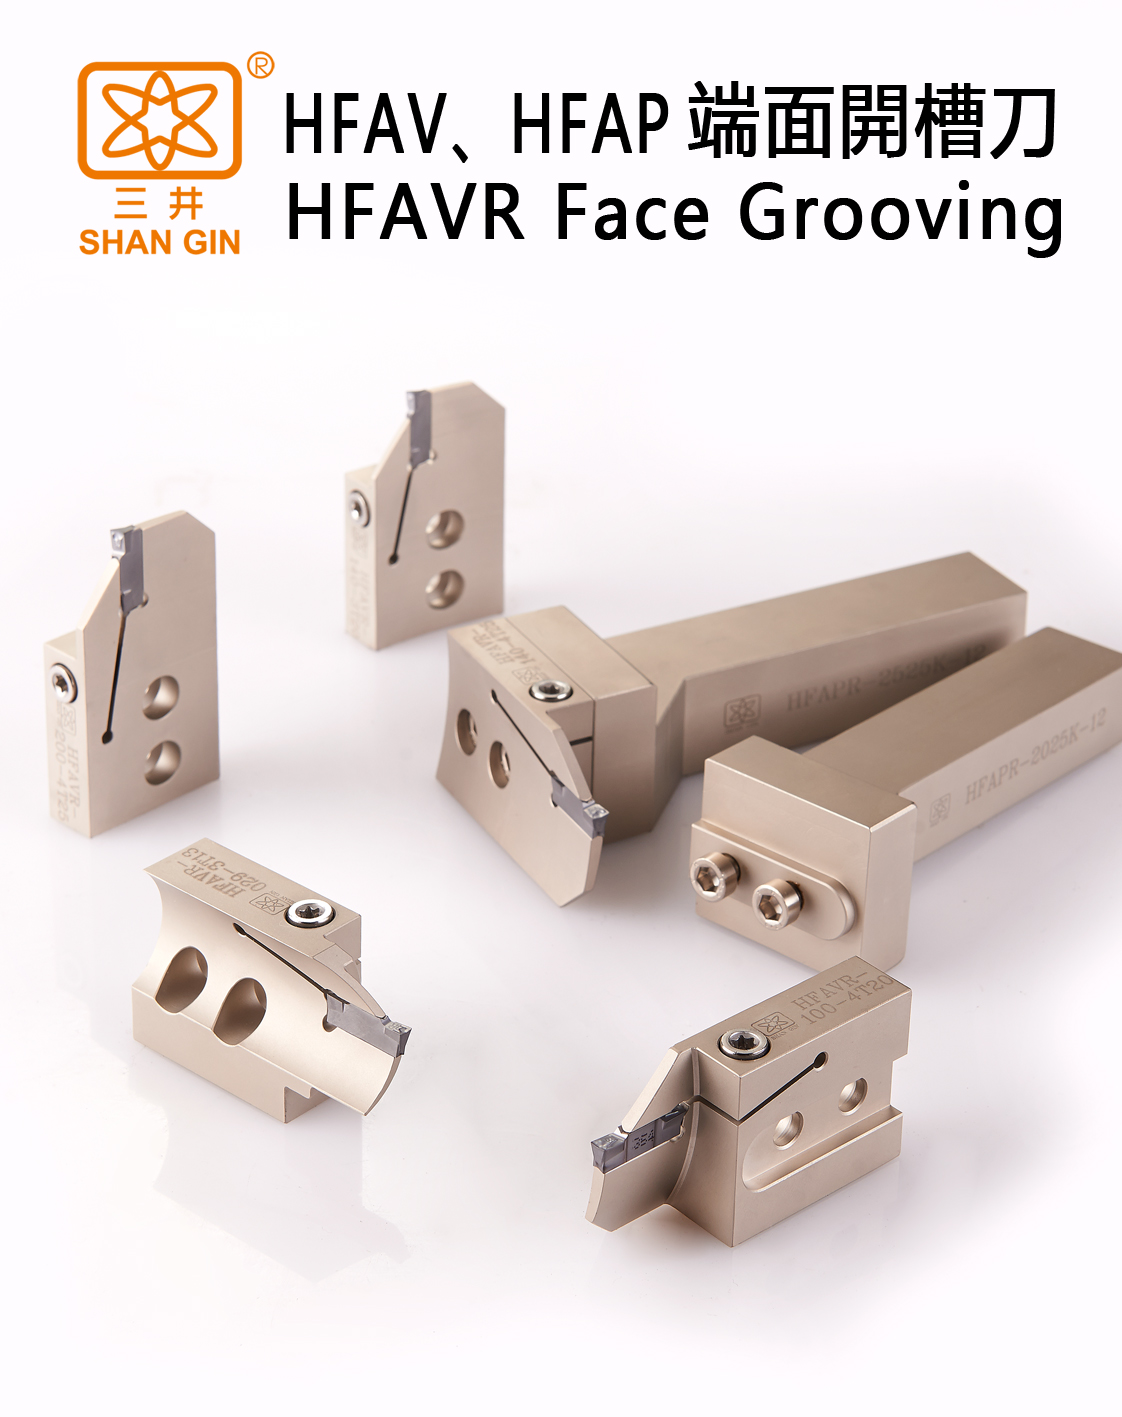 Catalog|HFAV、HFAP FACE GROOVING